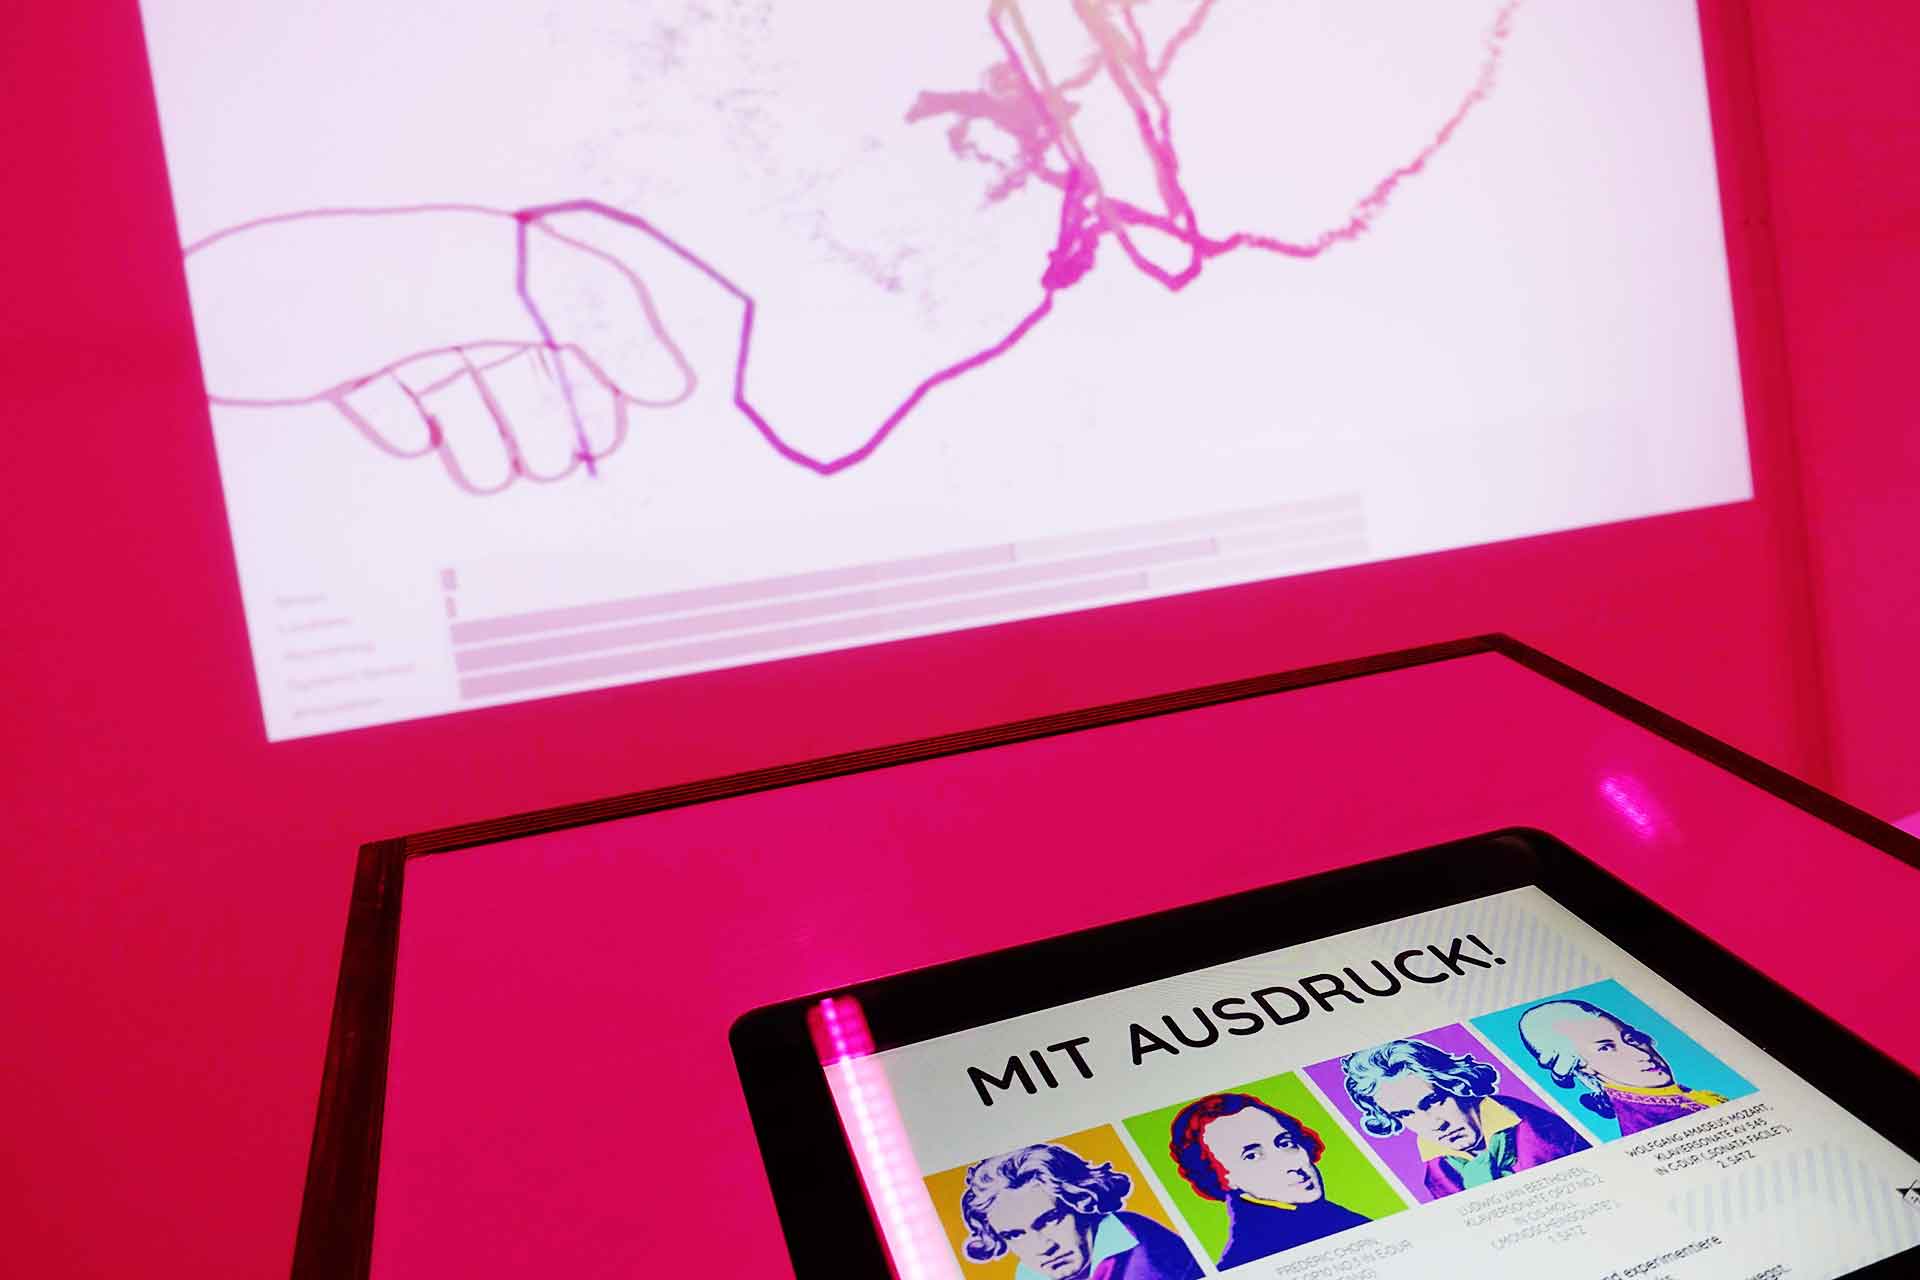 Das Touchscreen-Menü von Con Espressione zeigt die Songoptionen an. Im Hintergrund die Projektion einer Hand, die ausdrucksstarke Linien zeichnet.